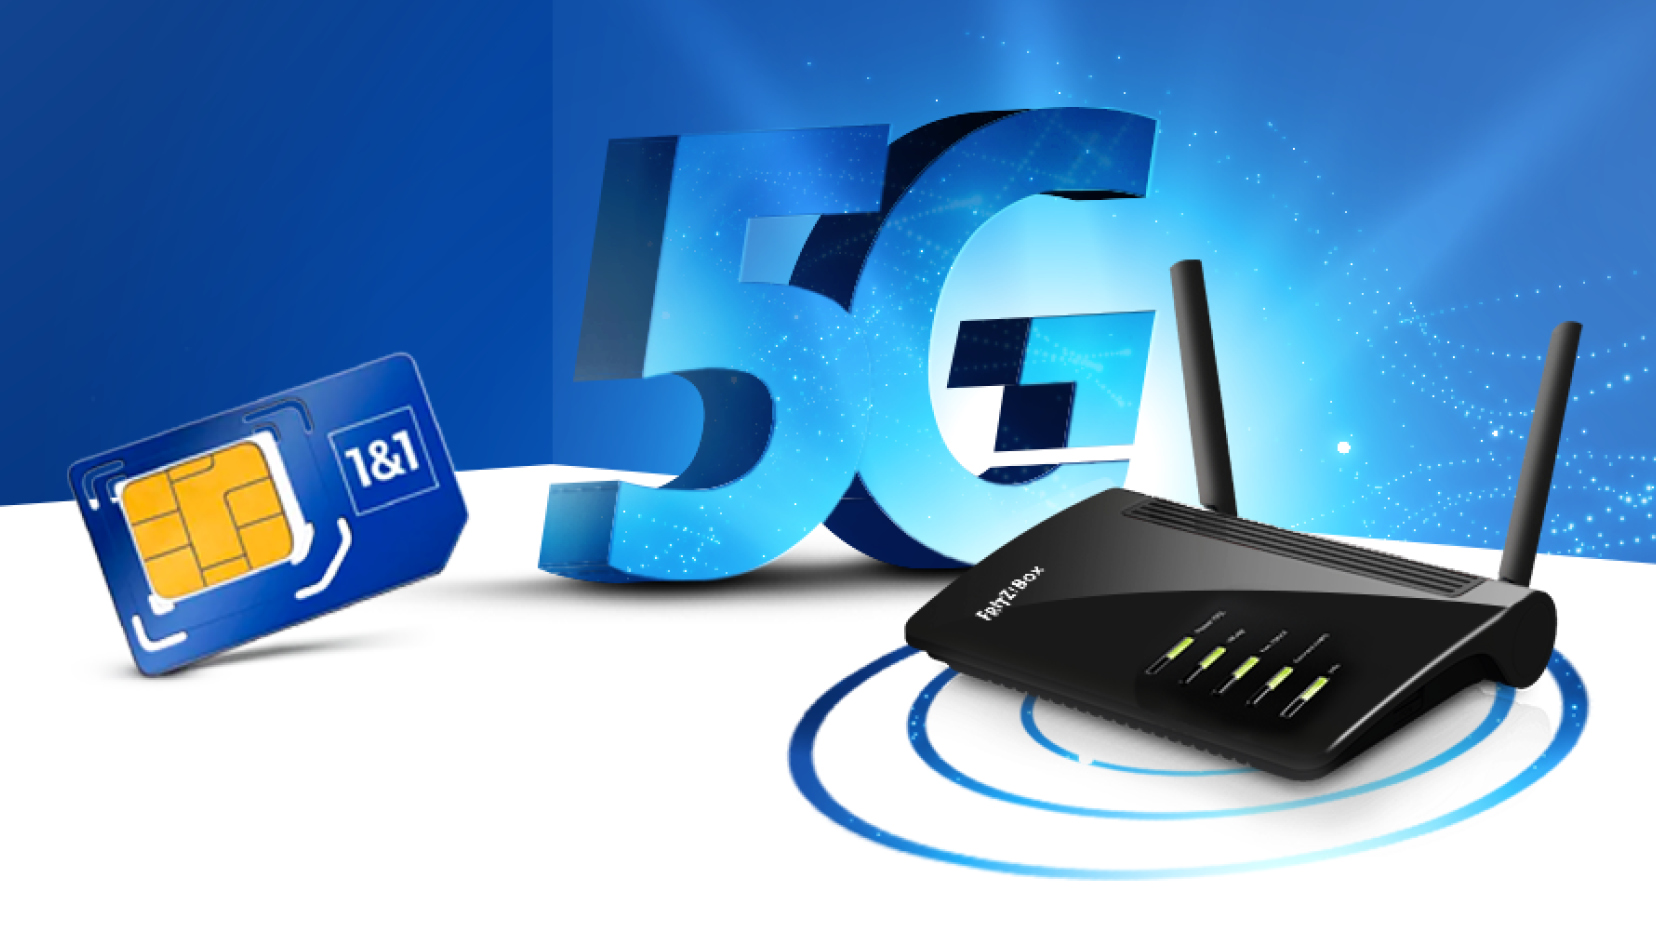 1&1 5G Netzausbau: 1&1 schaltet seine mobilen 5G Dienste frei